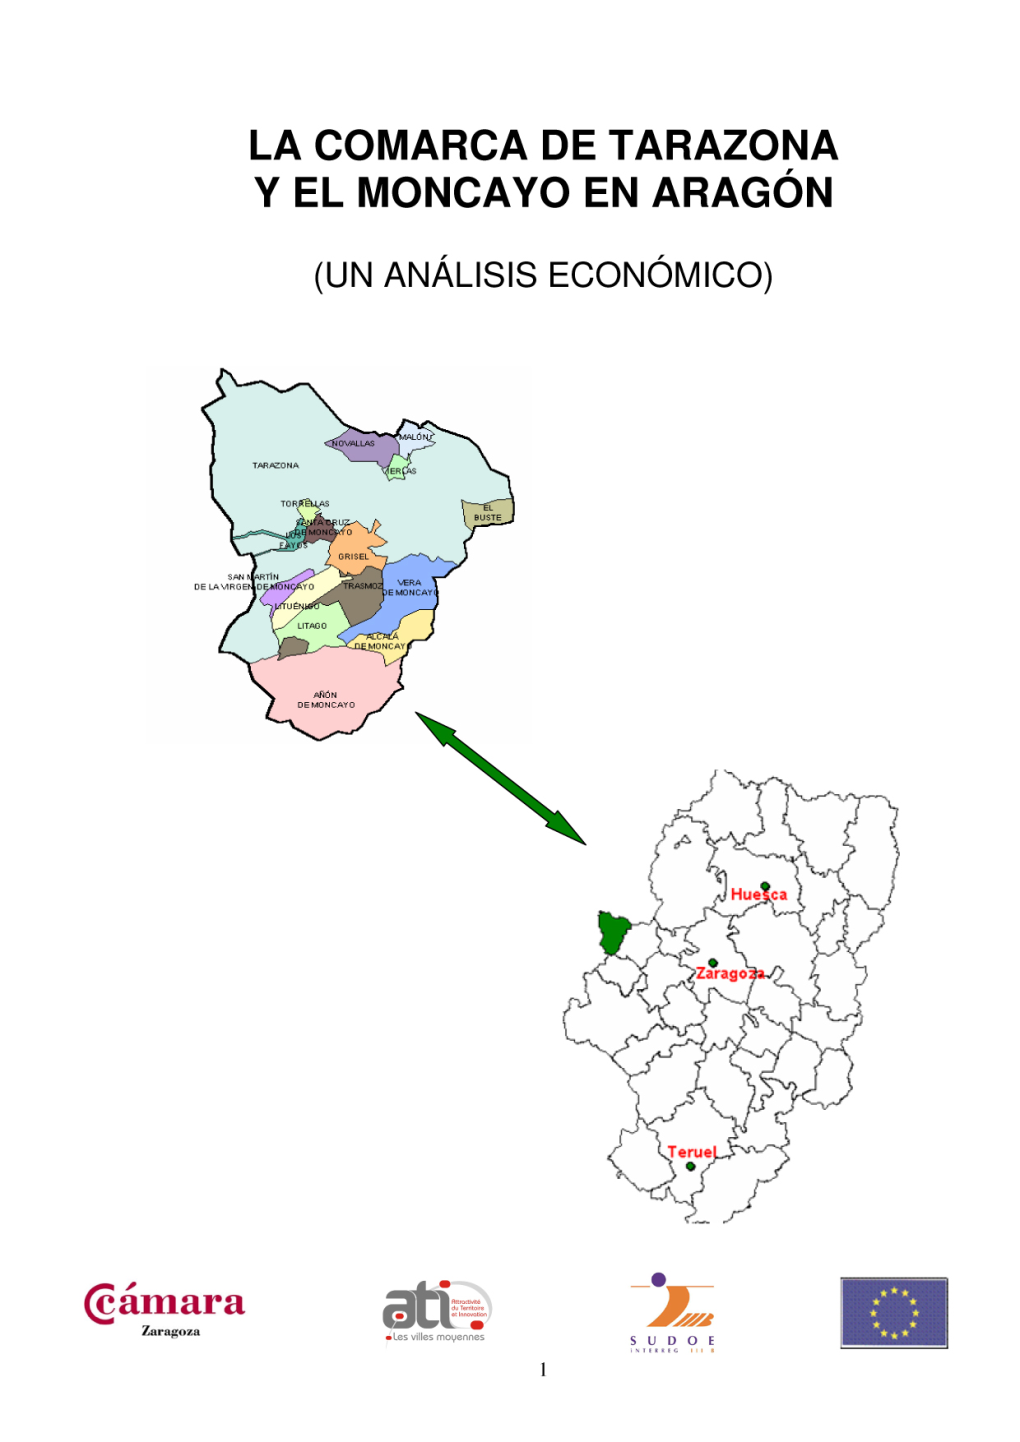 4. Actividad Económica En La Comarca De Tarazona Y El Moncayo